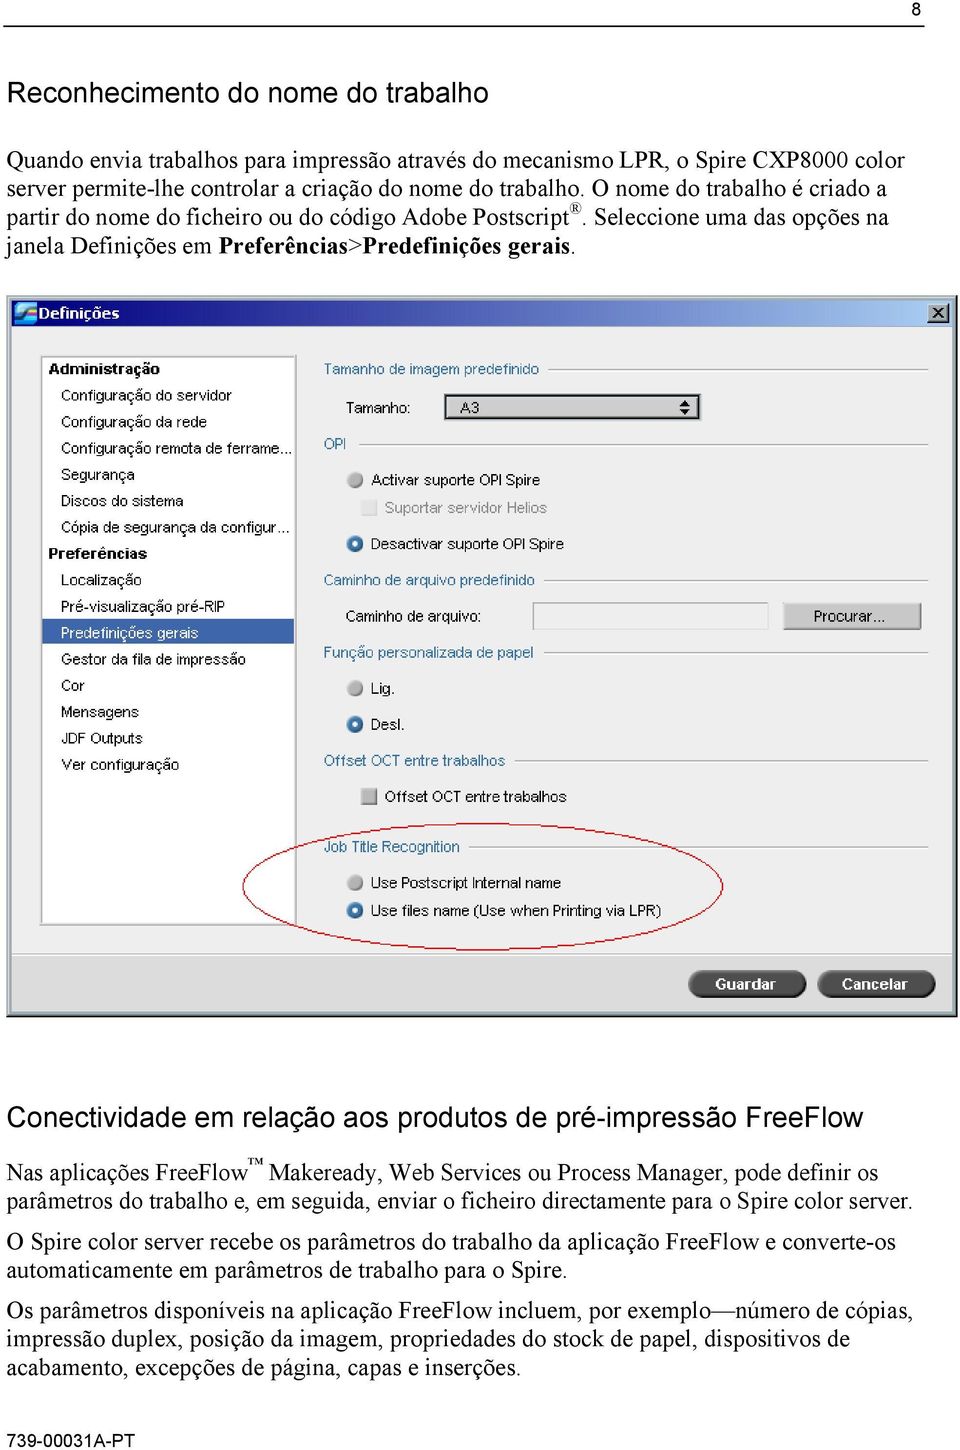 Conectividade em relação aos produtos de pré-impressão FreeFlow Nas aplicações FreeFlow Makeready, Web Services ou Process Manager, pode definir os parâmetros do trabalho e, em seguida, enviar o